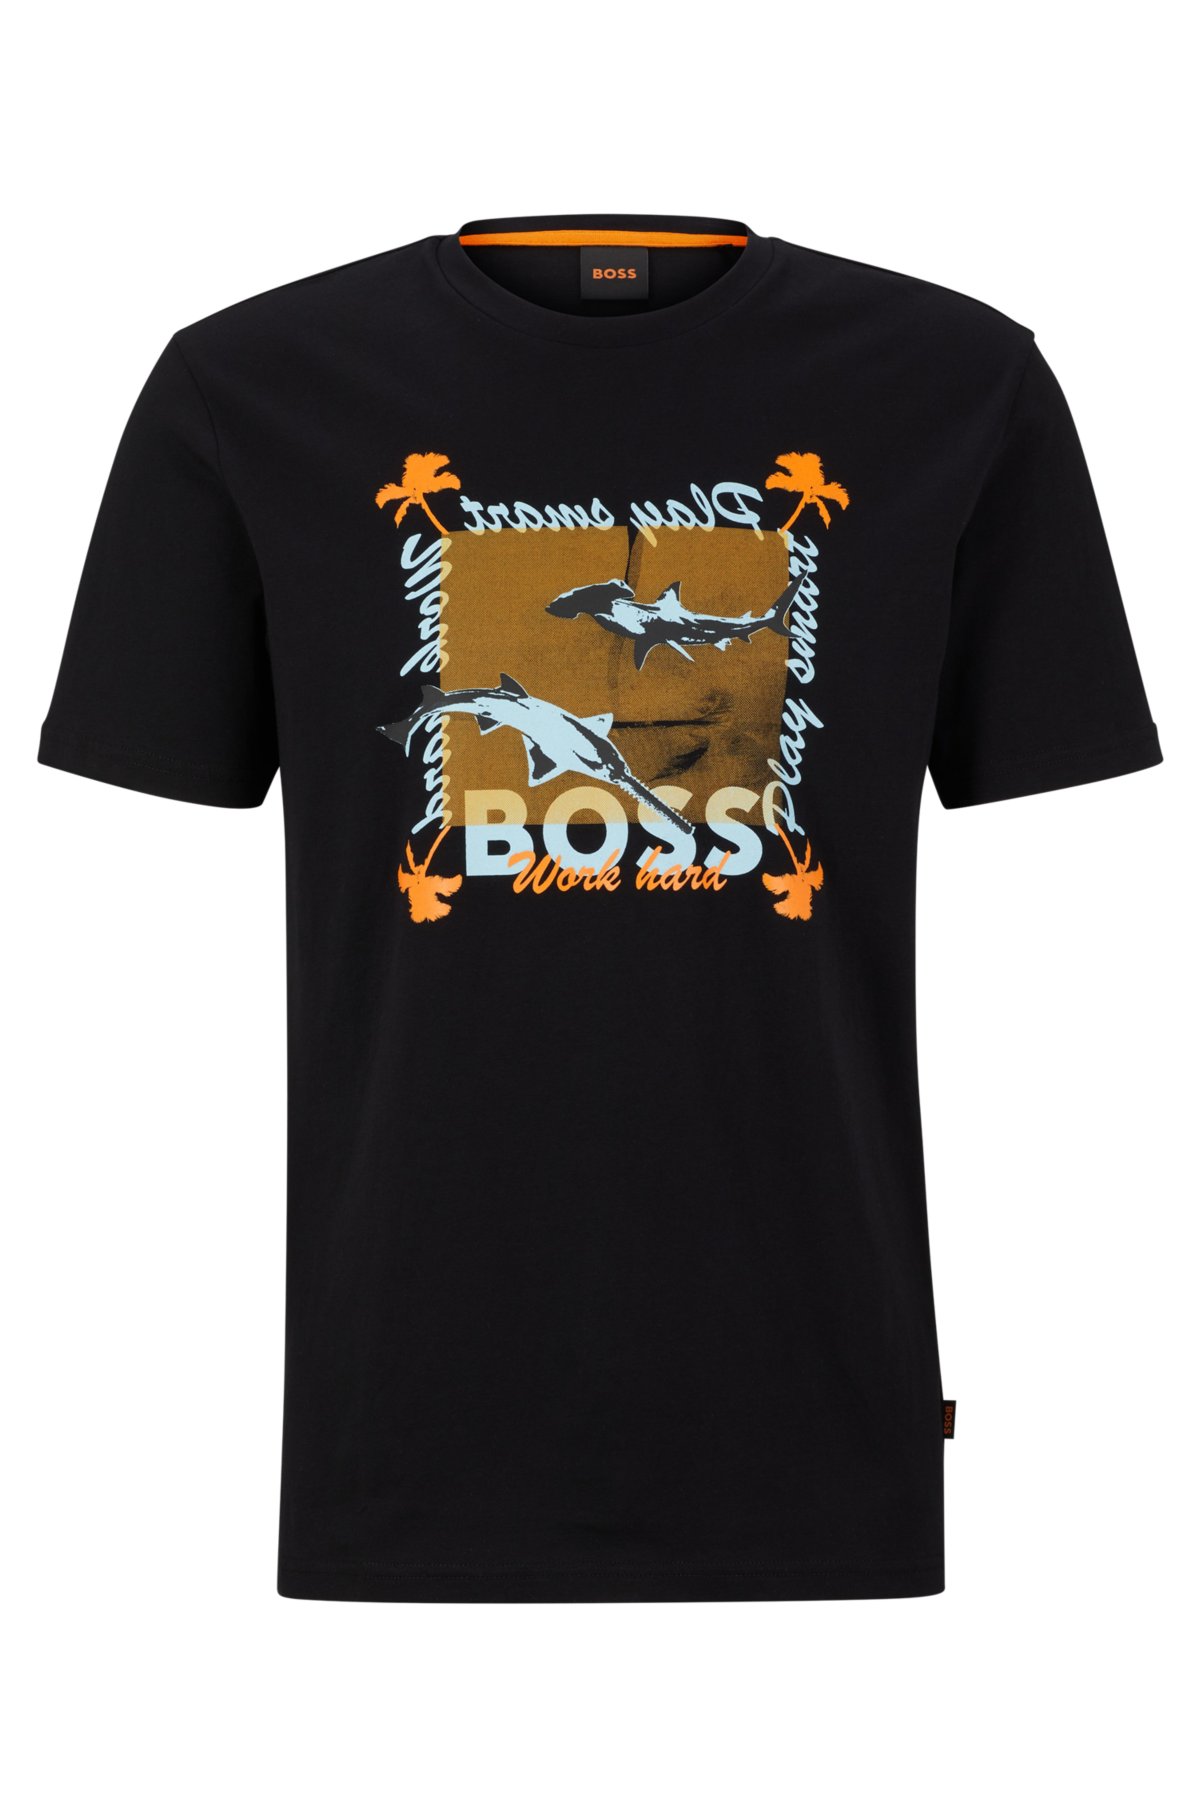 Meer dan wat dan ook versneller Jongleren BOSS - Regular-fit T-shirt van katoenen jersey met nieuwe print